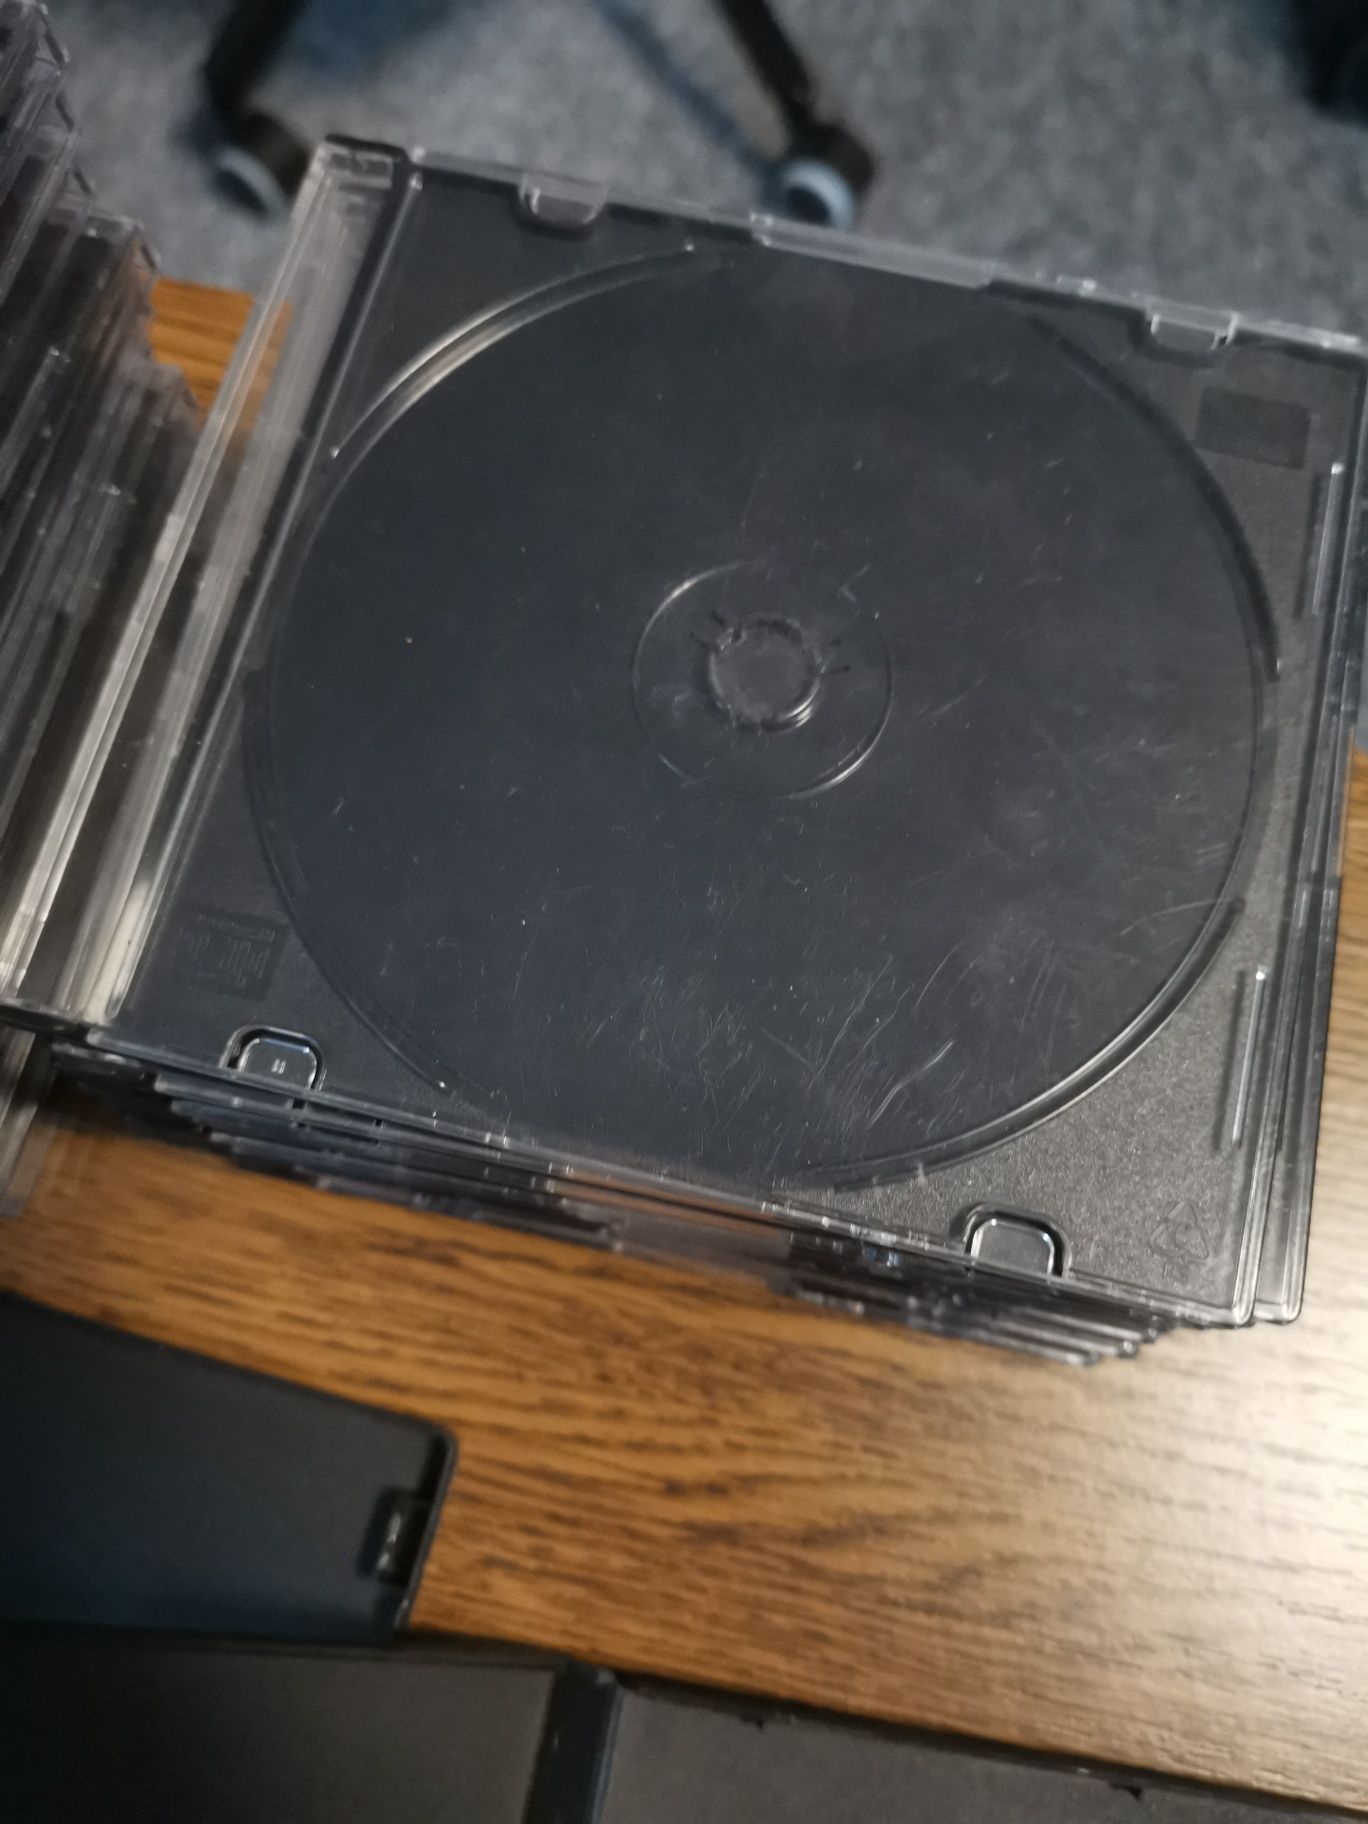 Pudełka opakowania na płyty CD i DVD Blu-Ray używane